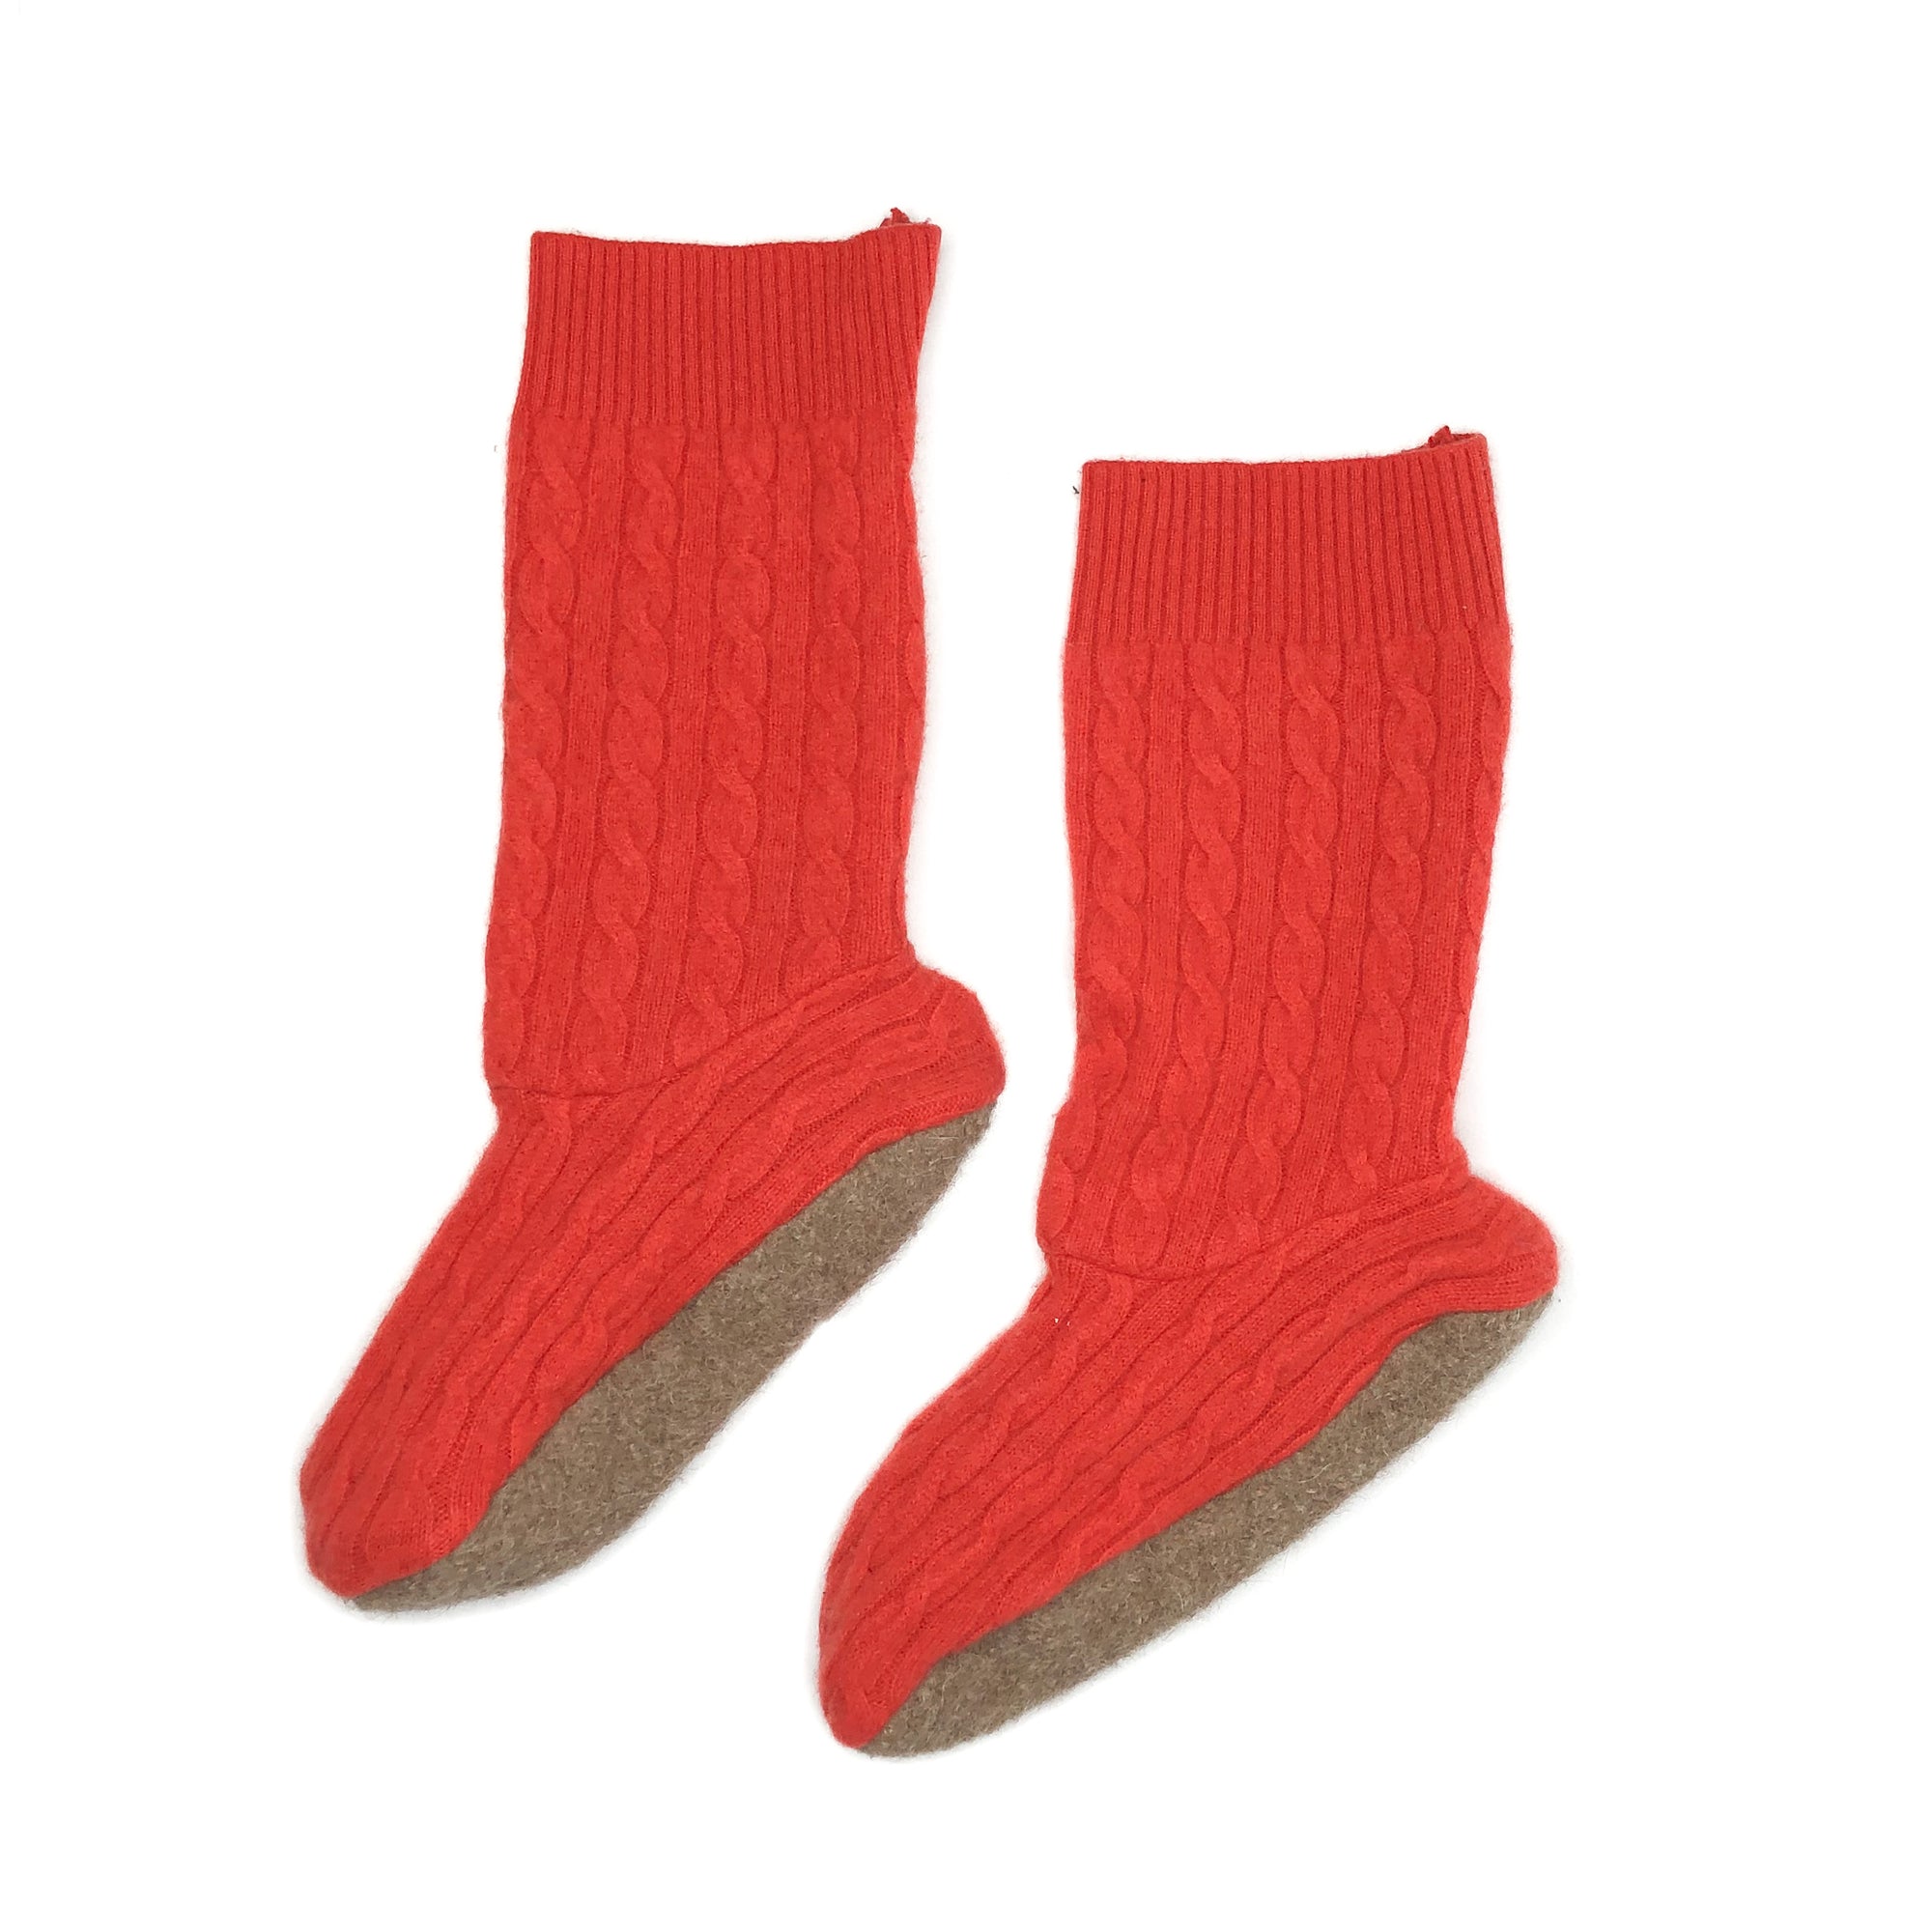 The Woolies Wool Socks